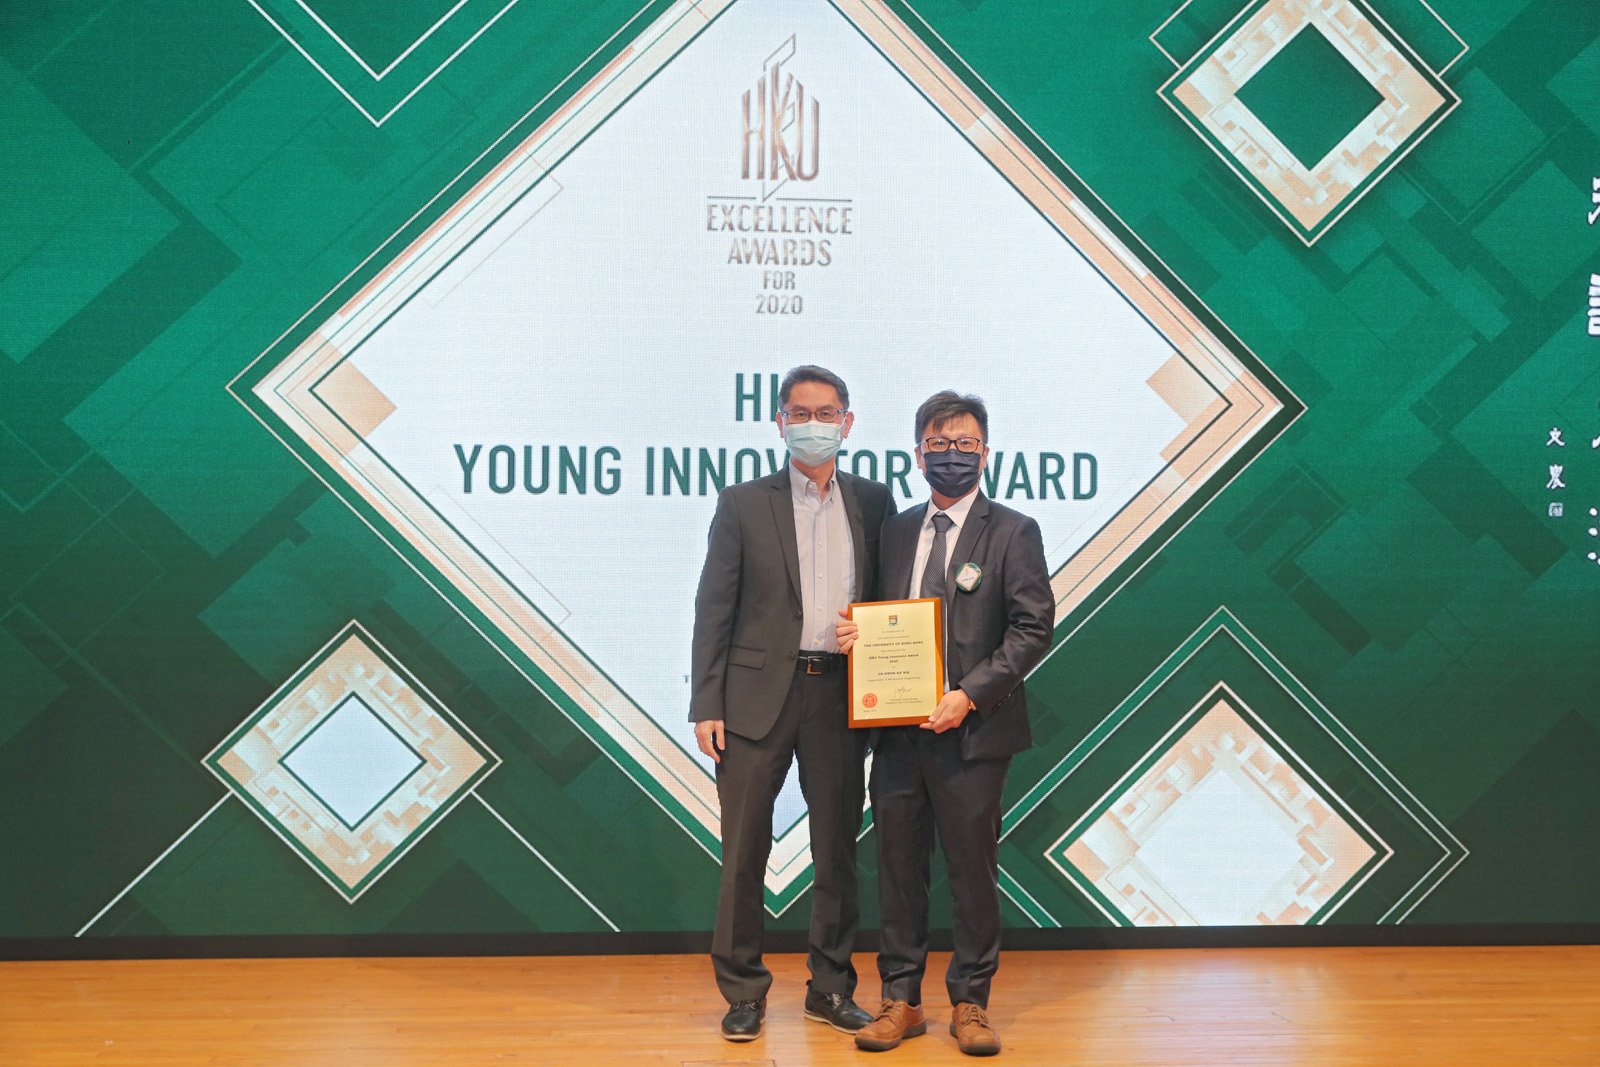 HKU Young Innovator Award 2020